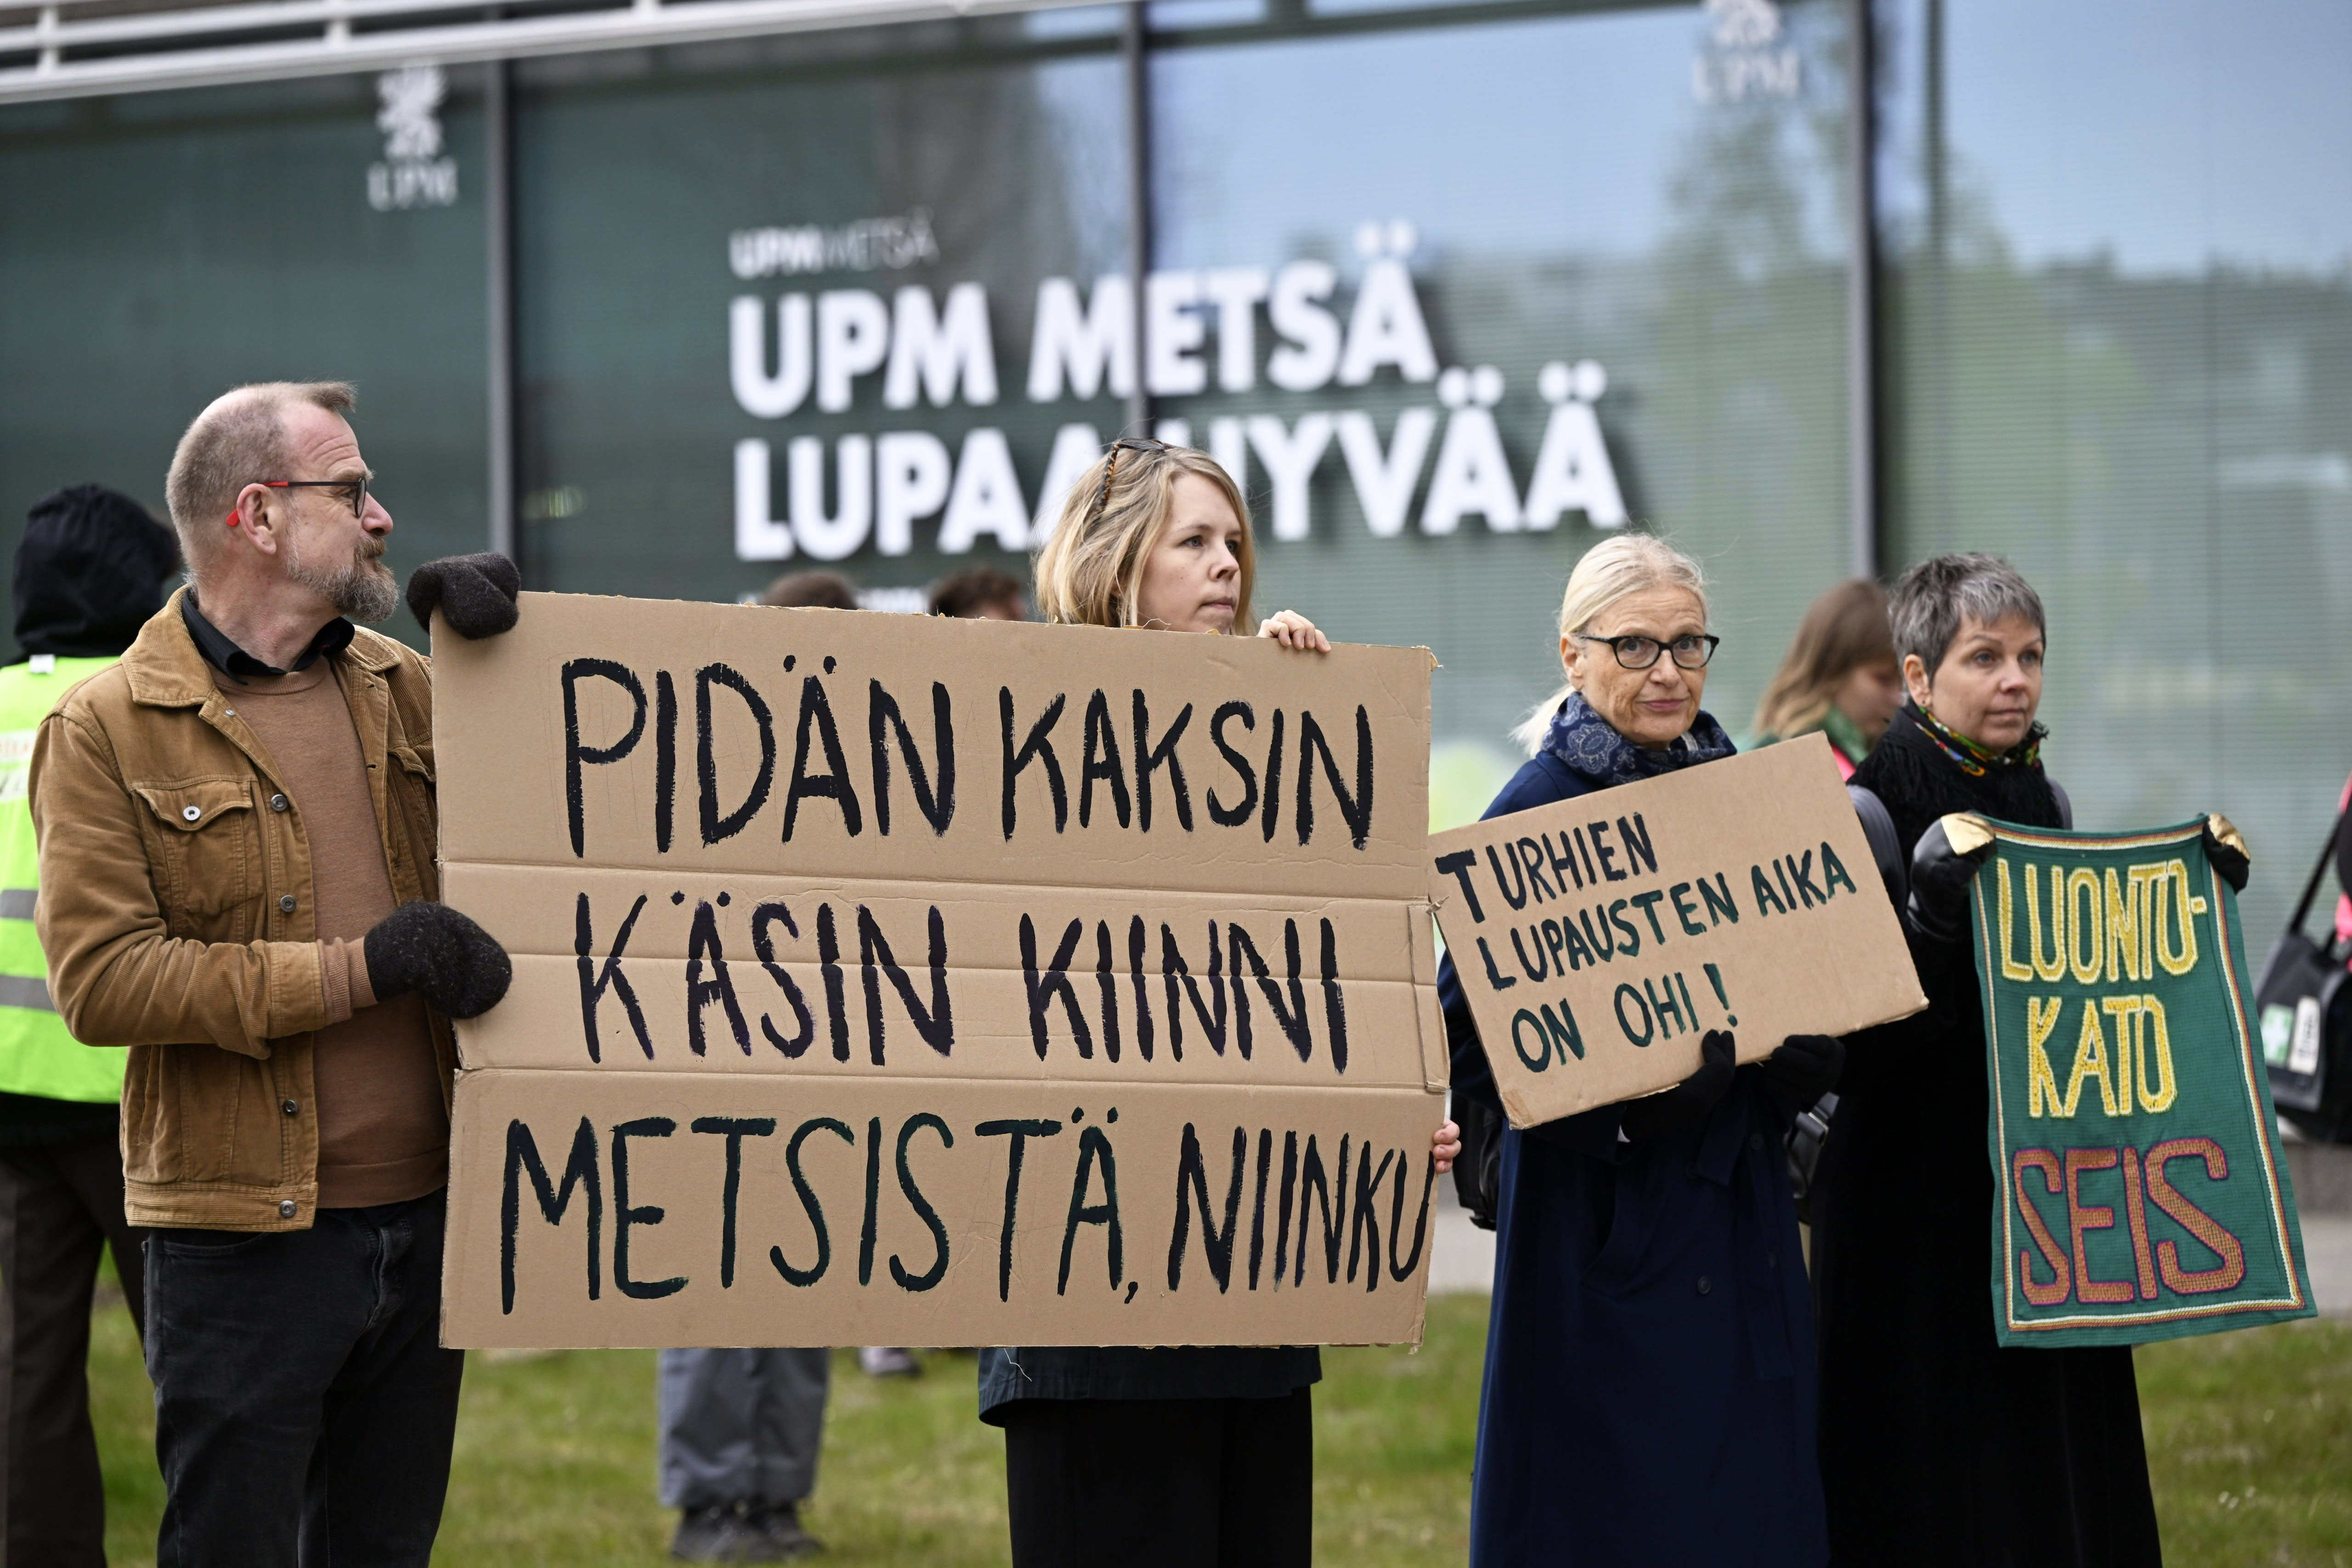 نشطاء المناخ يمنعون الوصول إلى مصنع اللب التابع لـ UPM ويطالبون بوضع حد للغسيل الأخضر